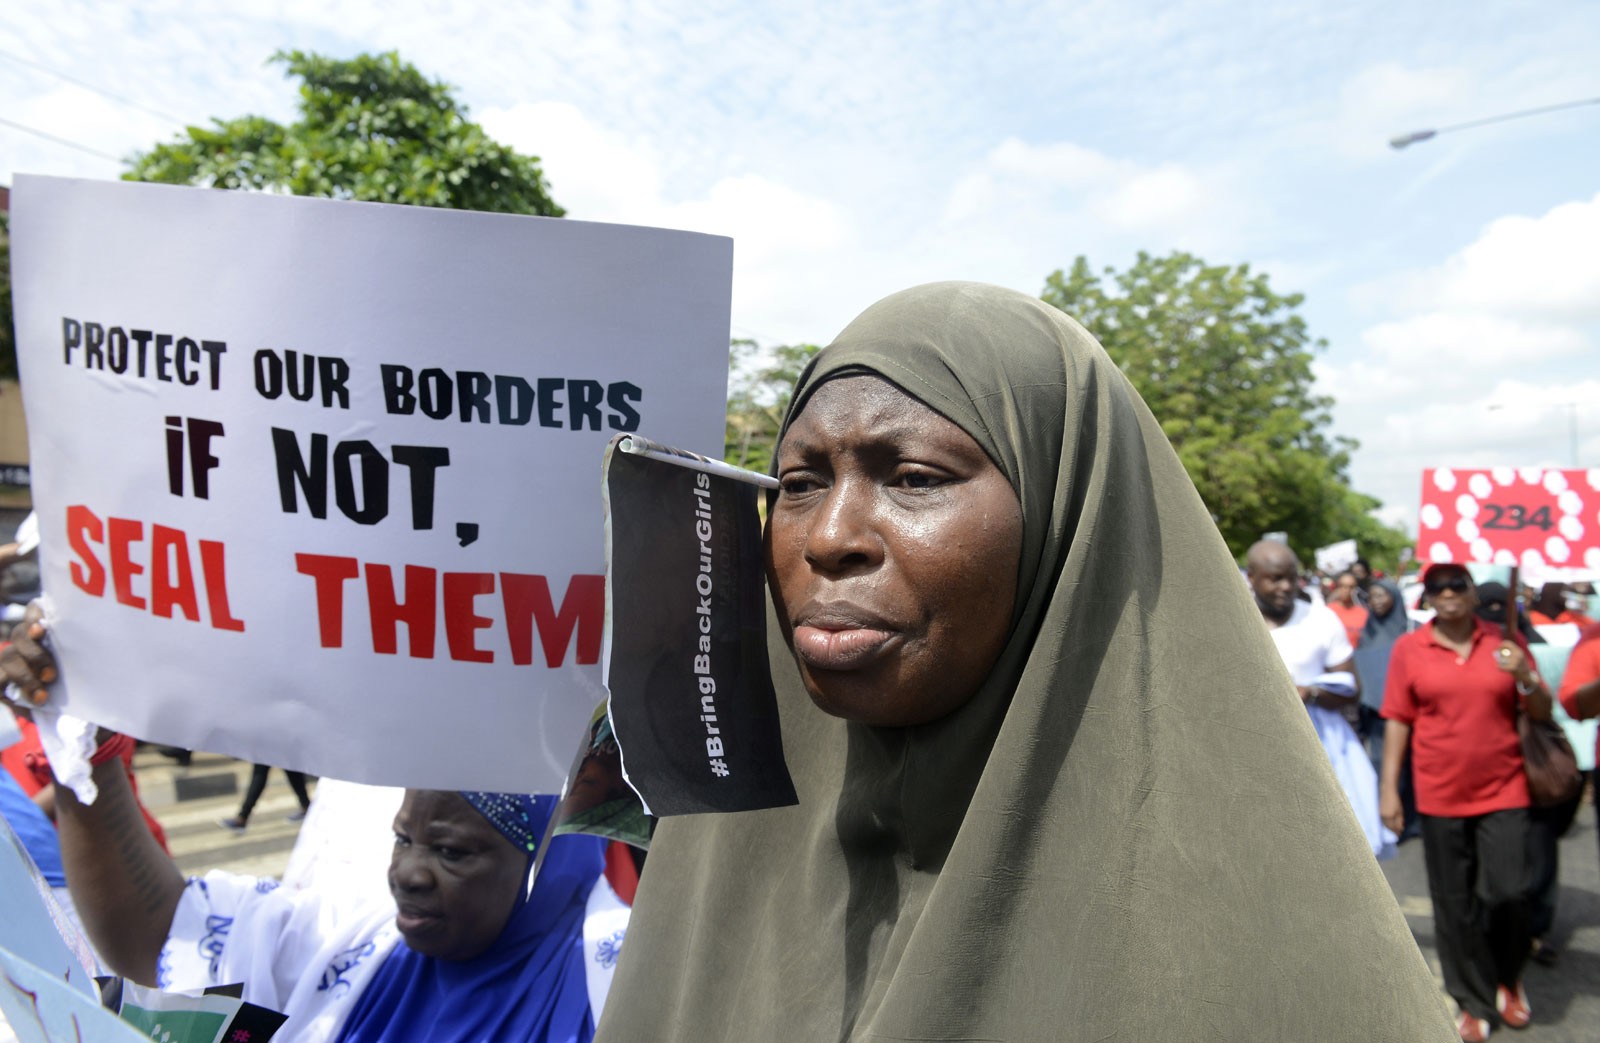 MAIS OITO MENINAS NA NIGÉRIA FORAM SEQUESTRADAS PELO GRUPO TERRORISTA (Foto: AFP)